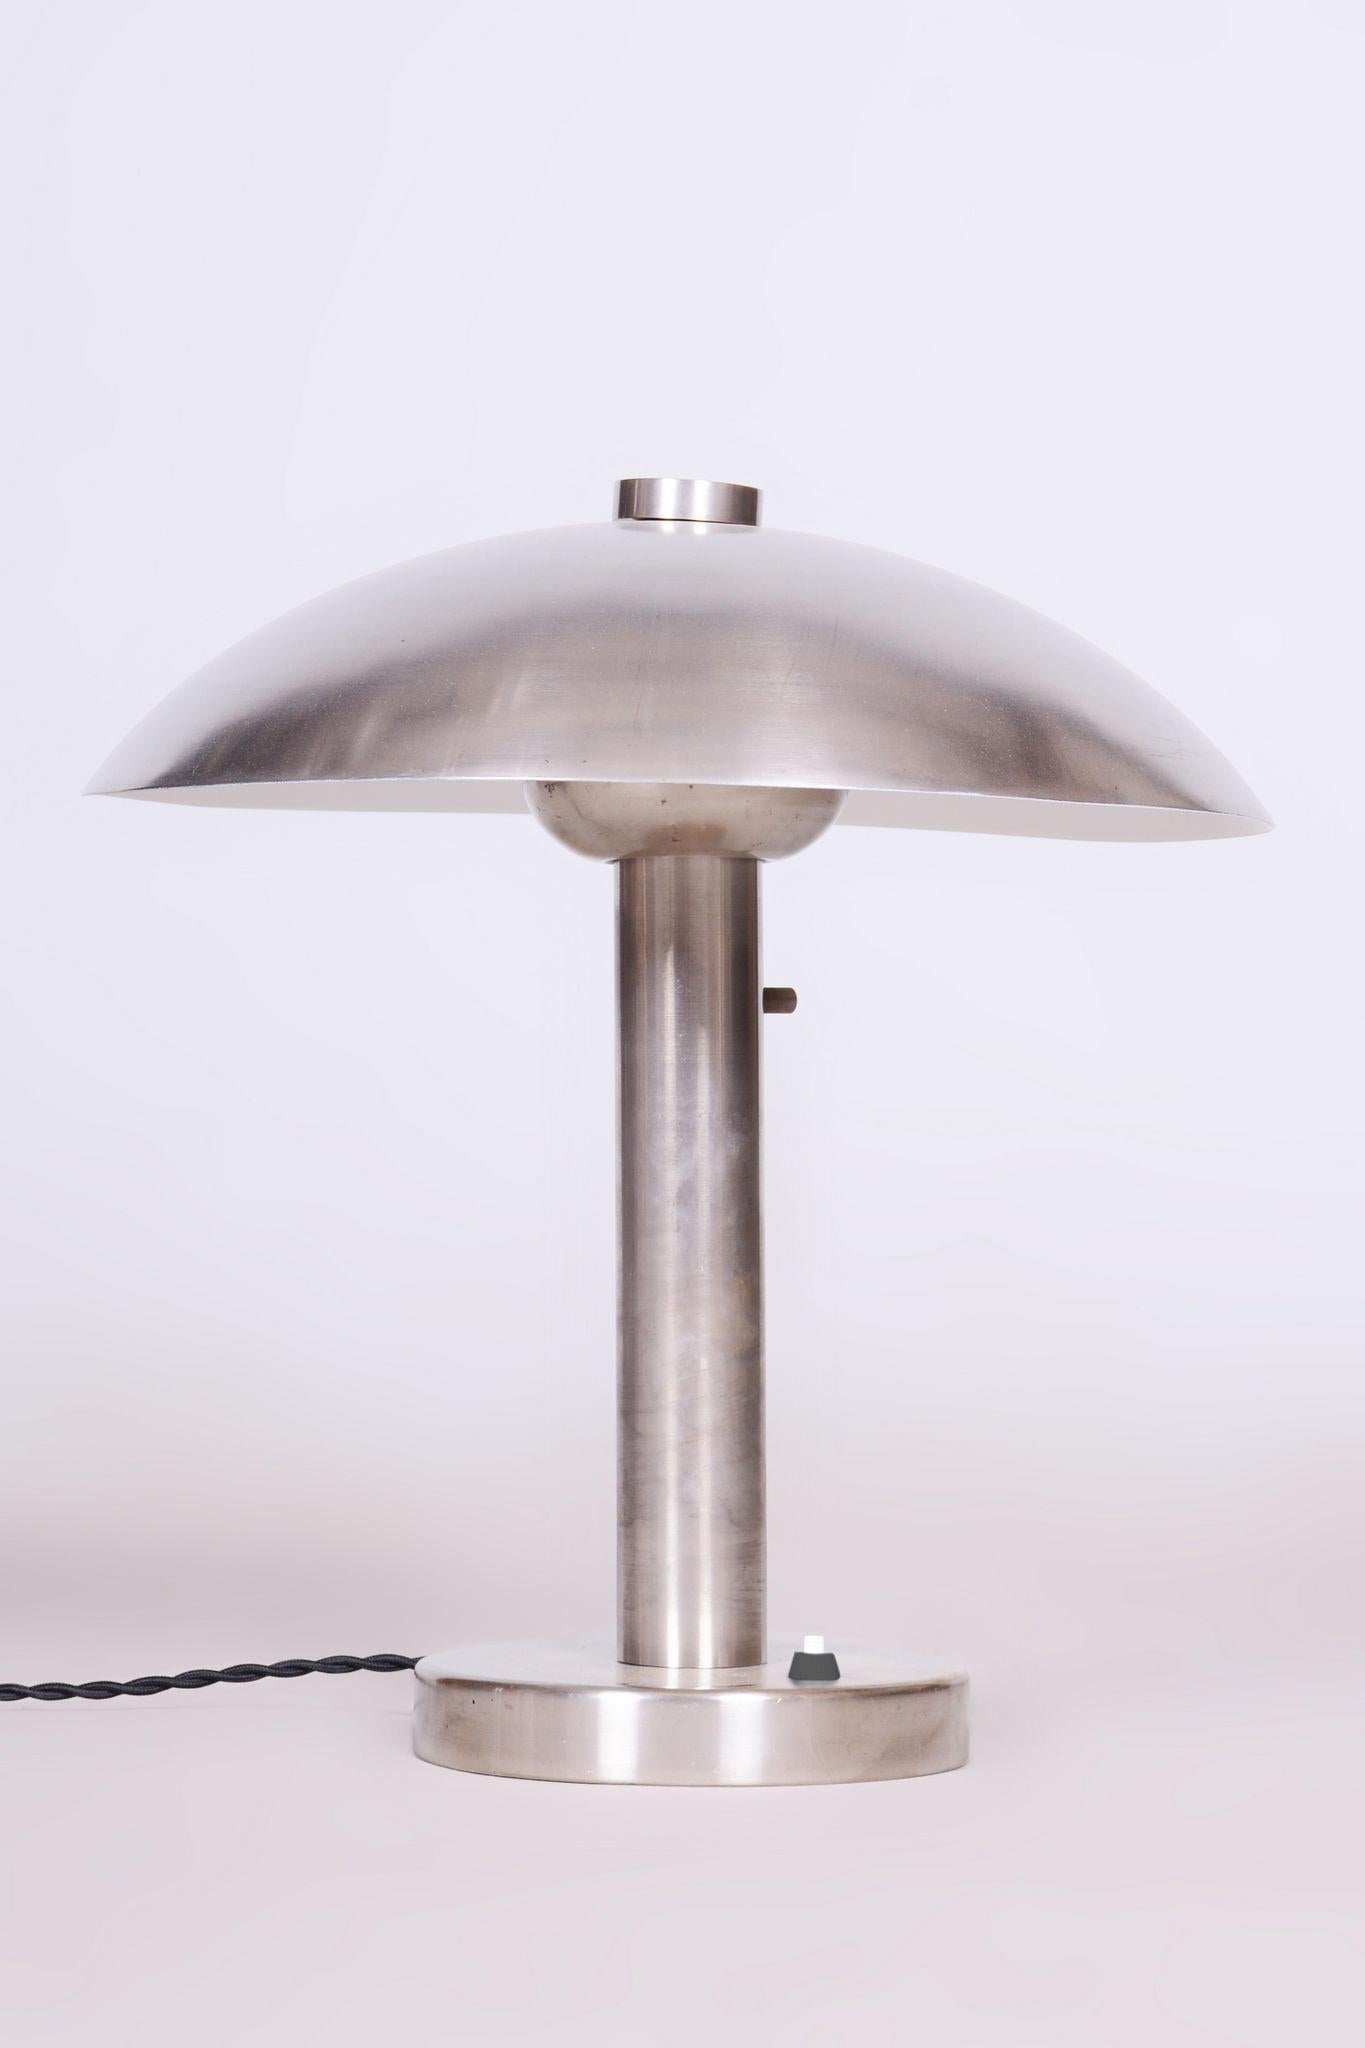 Restaurierte Tischlampe 

Herkunft: Tschechisch
Zeitraum: 1920-1929
MATERIAL: Vernickelter Stahl

Einzigartiges Design mit einstellbarer Lichtintensität durch Verschieben der Glühbirne.

Dieser Artikel hat eine neue, voll funktionsfähige